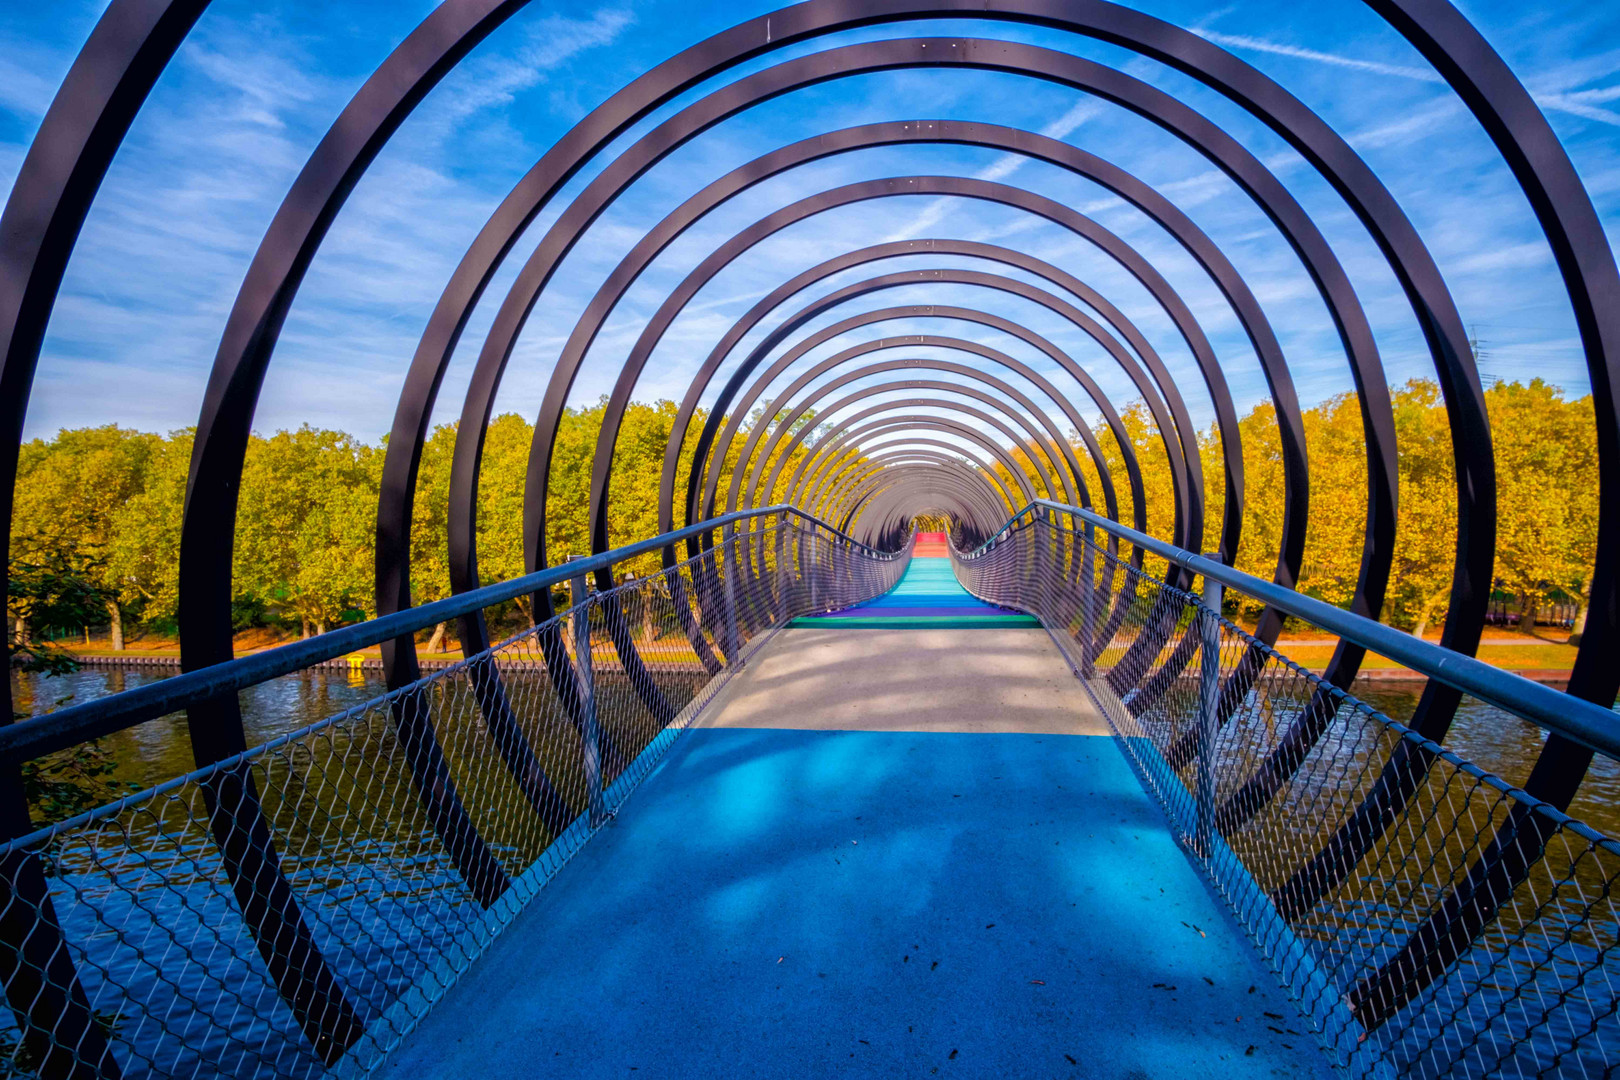 Slinky Springs to Fame Brücke in Oberhausen